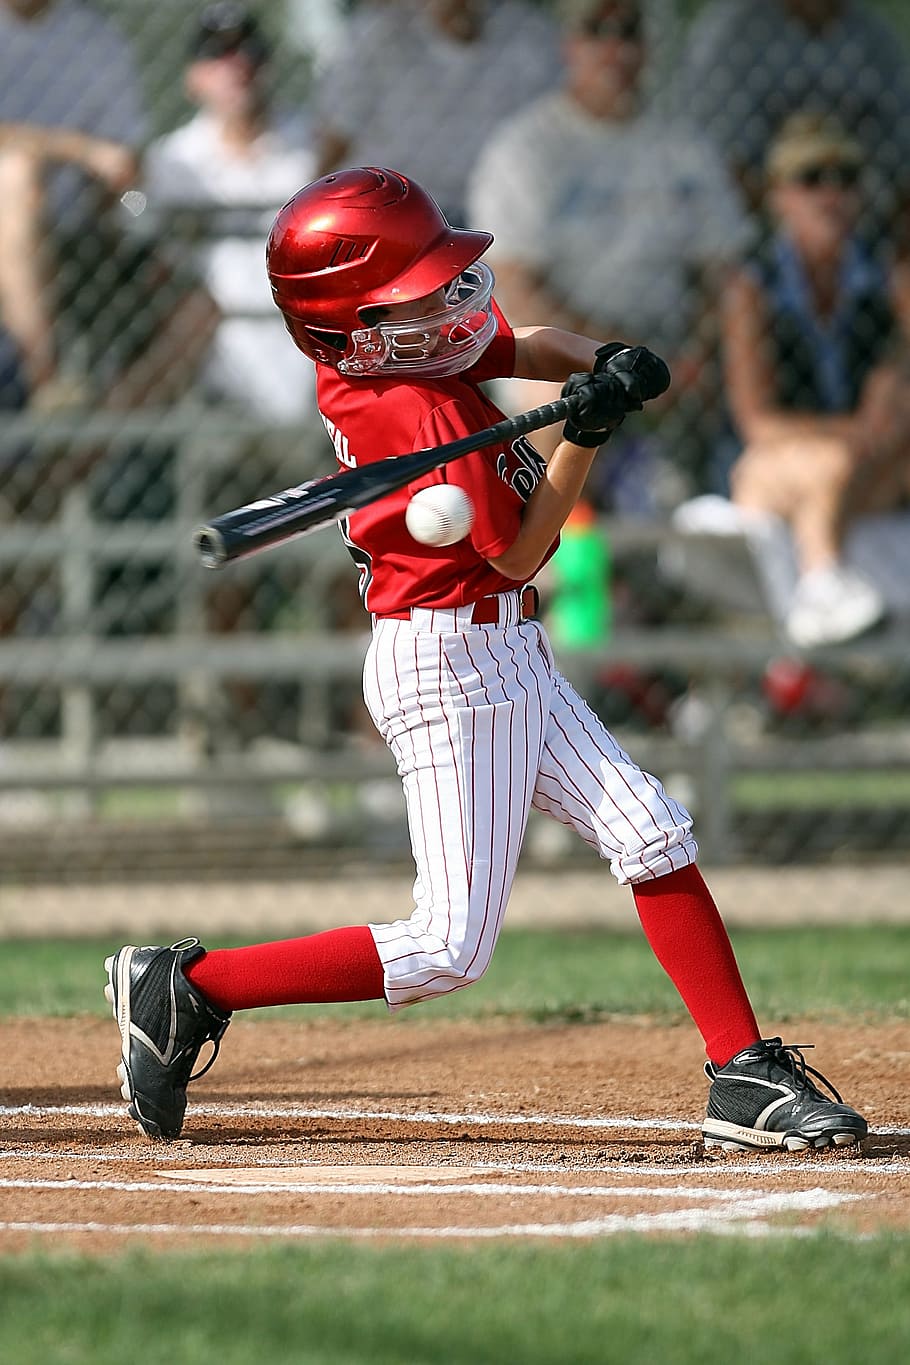 hombre jugando béisbol, béisbol, bateador, bate de béisbol, pelota, liga pequeña, joven, juventud, niño, uniforme